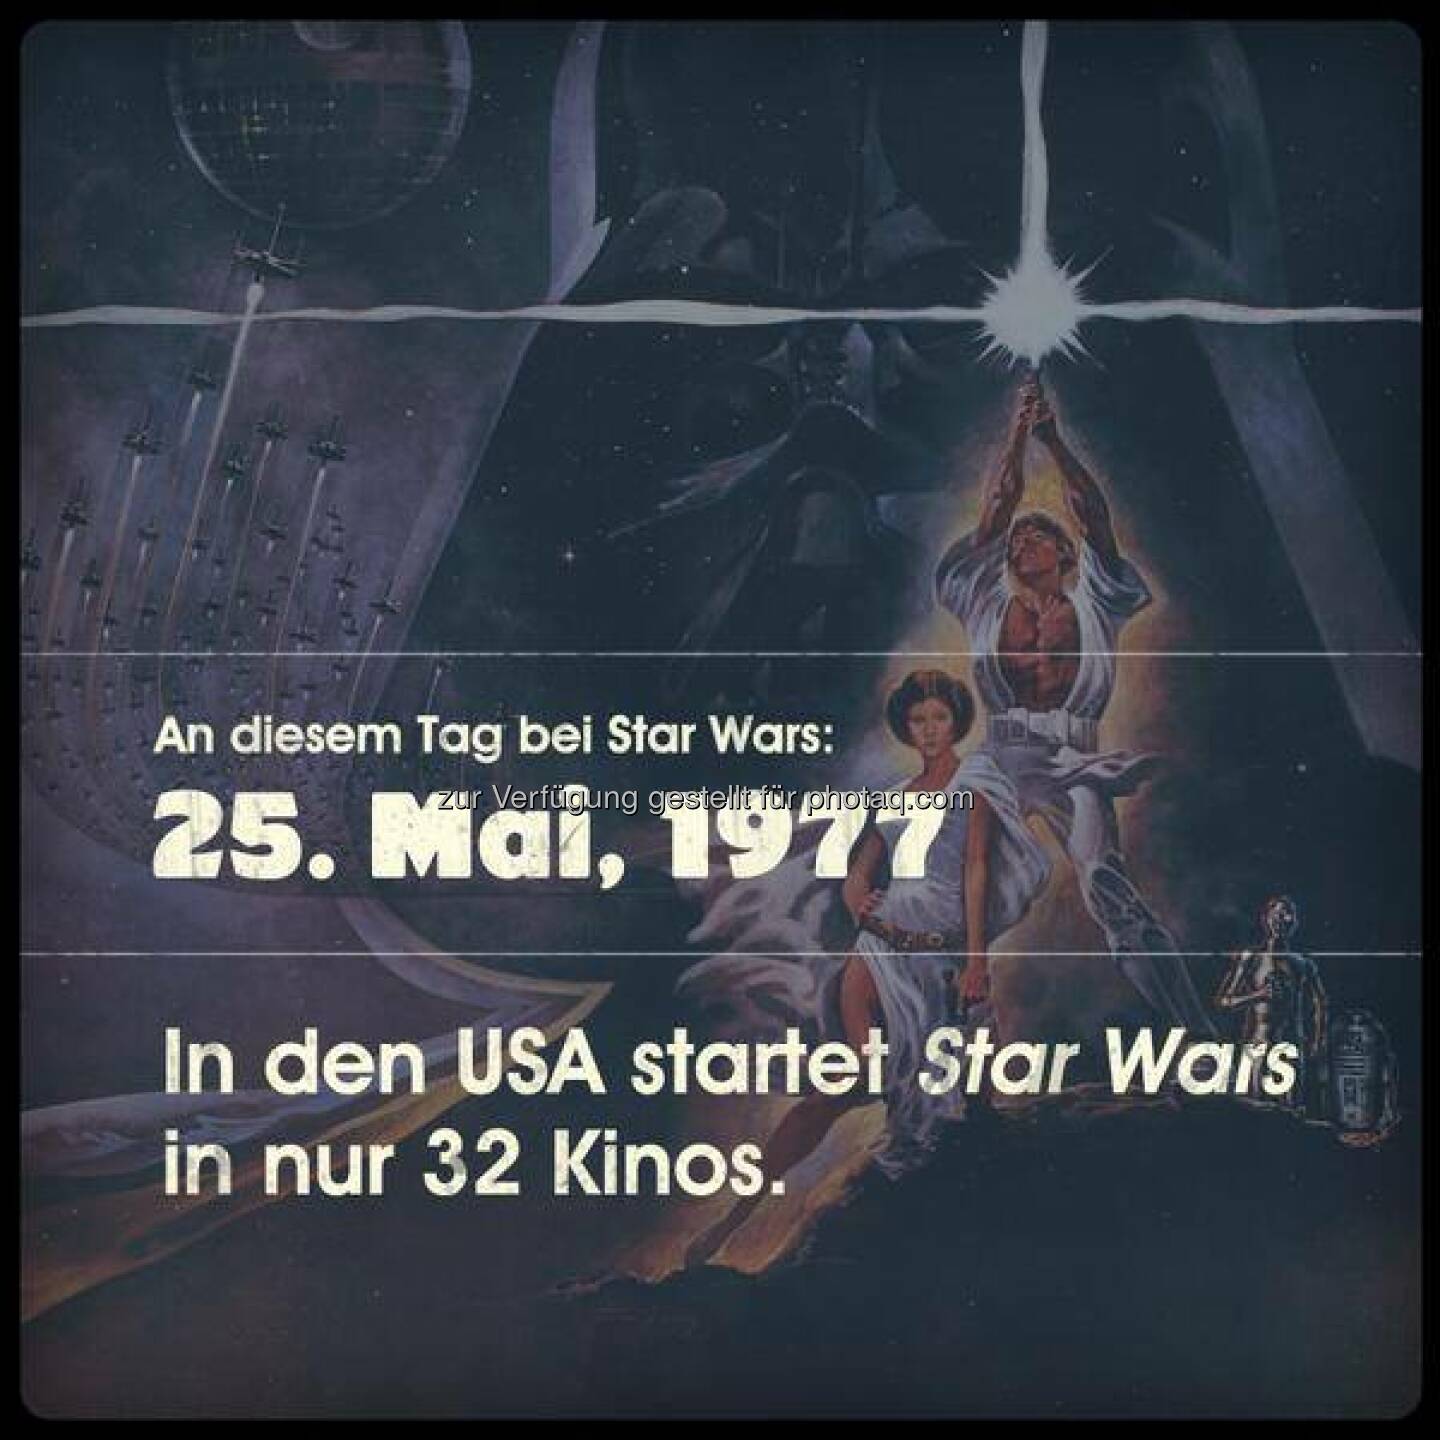 Am 25. Mai 1977, heute vor 37 Jahren, ist Star Wars in den USA gestartet. In nicht mal drei Dutzend Kinos. Wahnsinn! #AnDiesemTagbeiStarWars (gesehen bei www.twitter.com/StarWarsDE)  Source: http://facebook.com/DeinSkyFilm